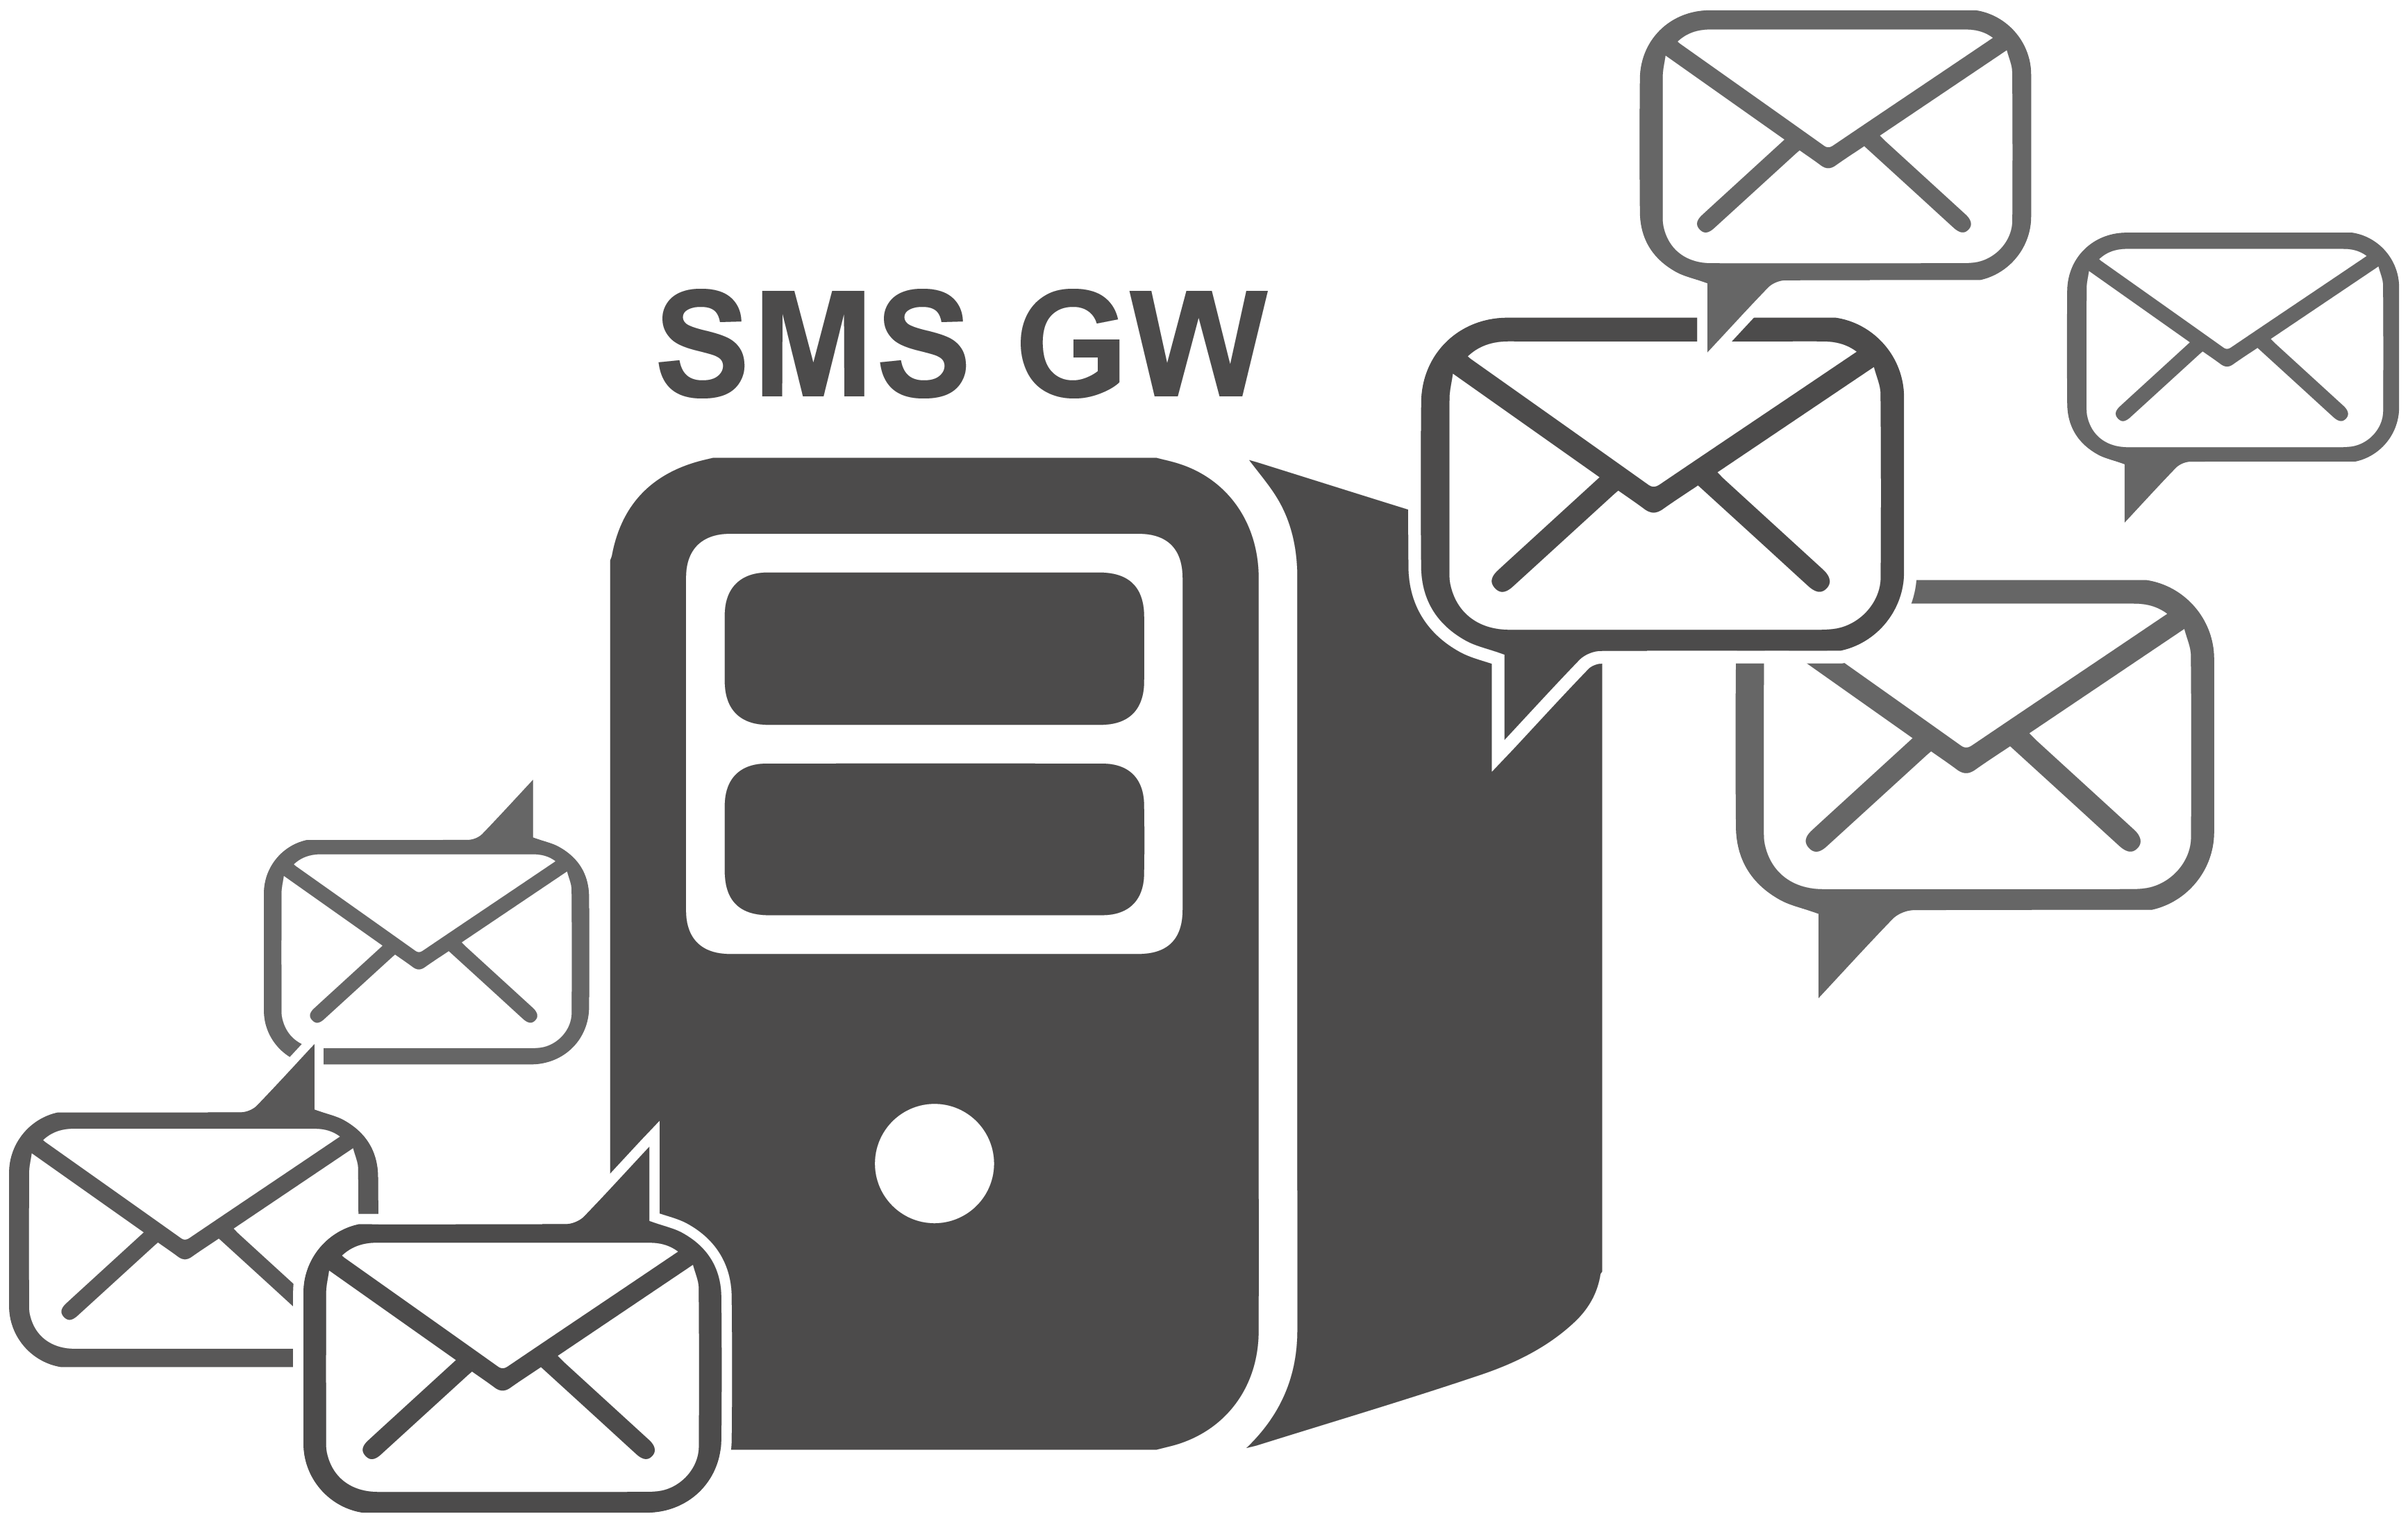 SMS GW